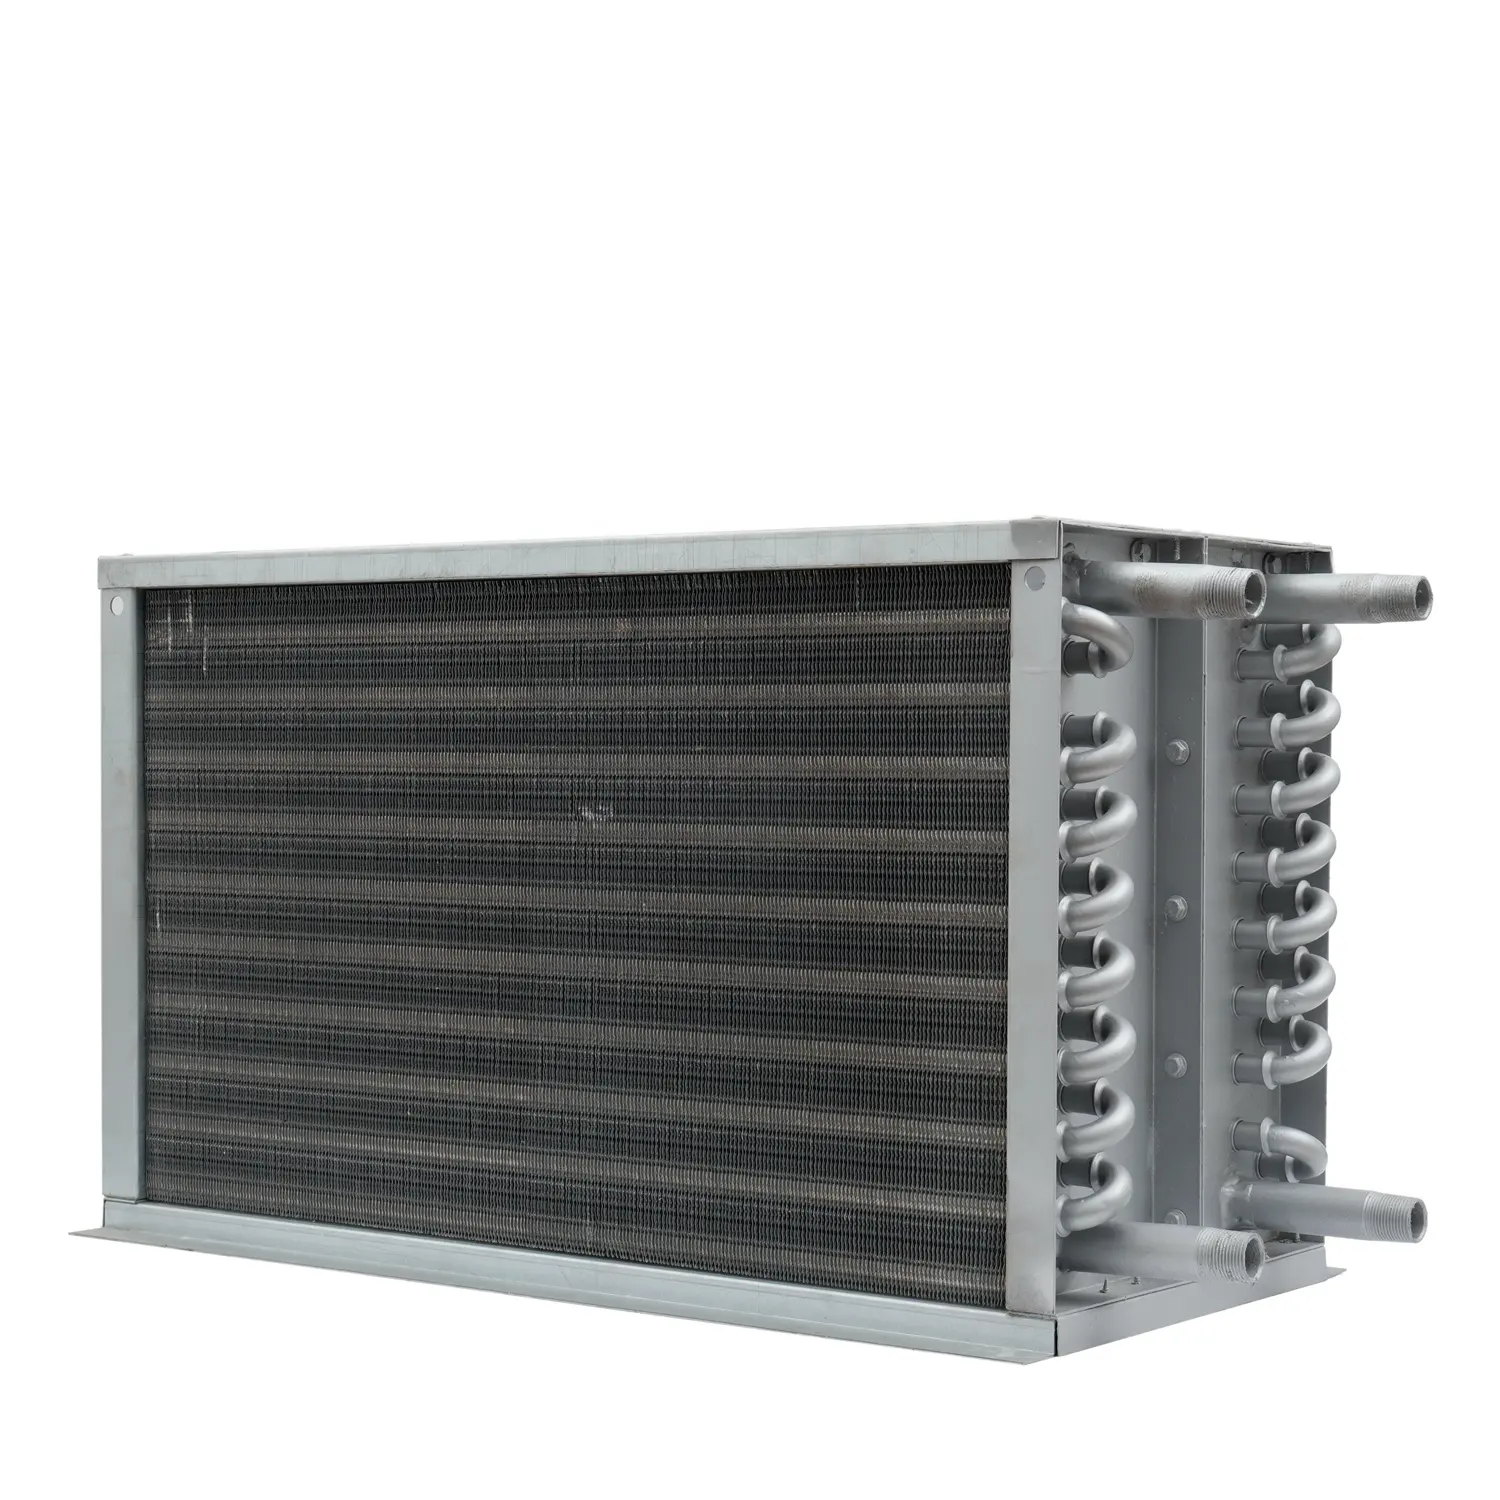 Echangeur de chaleur à tube à ailettes en acier inoxydable pour pièces de climatisation HVAC